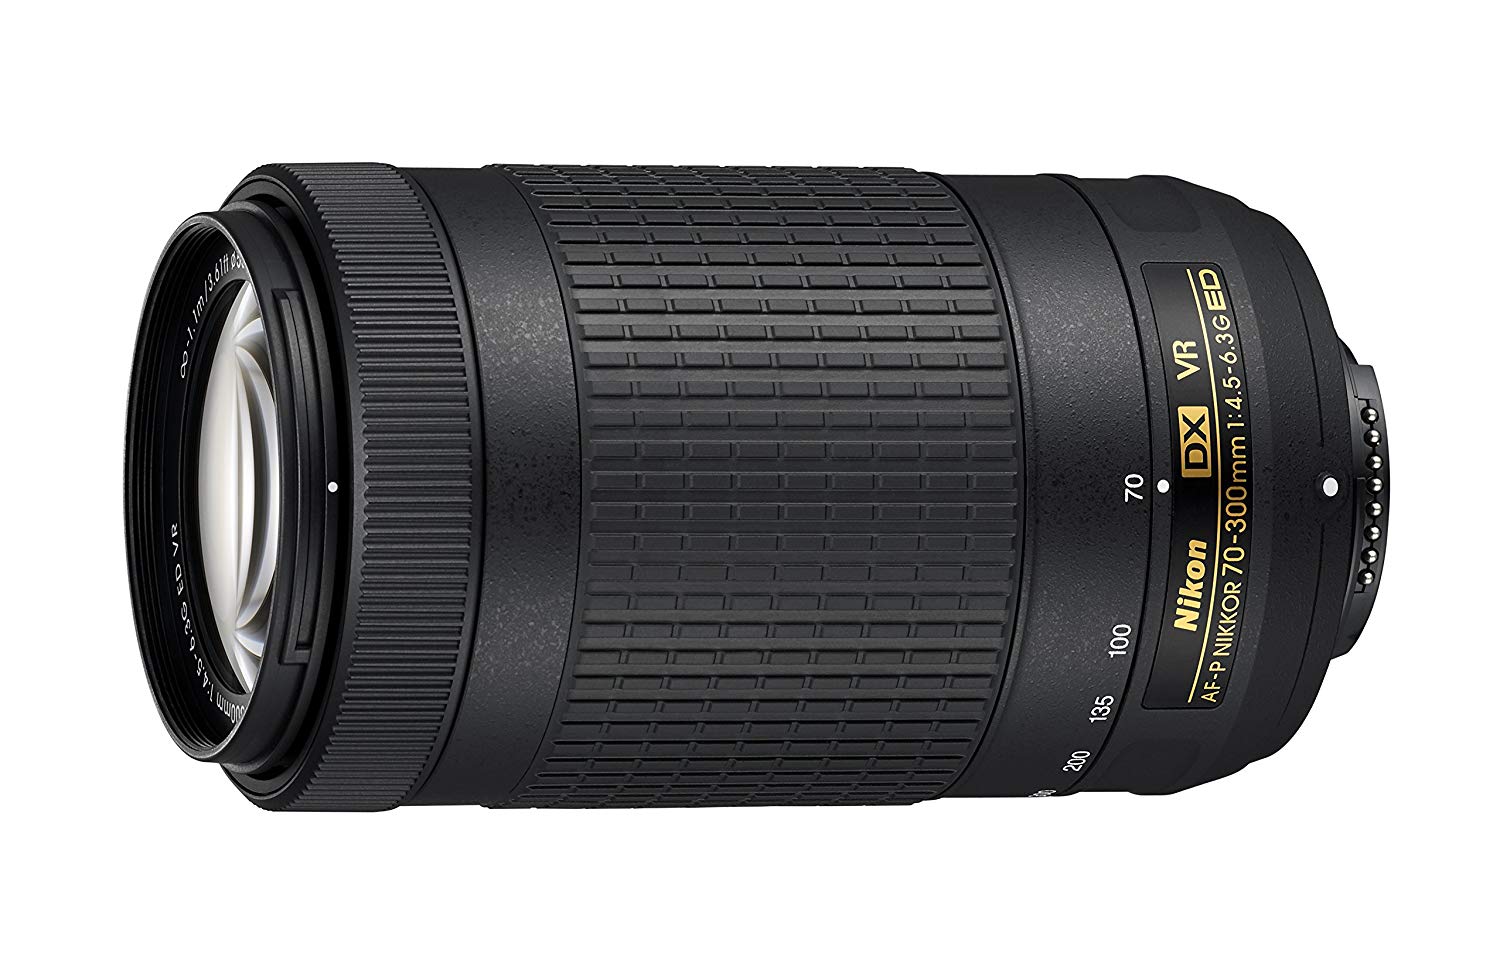 Nikon AF-P DX NIKKOR 70-300mm f/4.5-6.3G ED VR Lens for DSLR Cameras